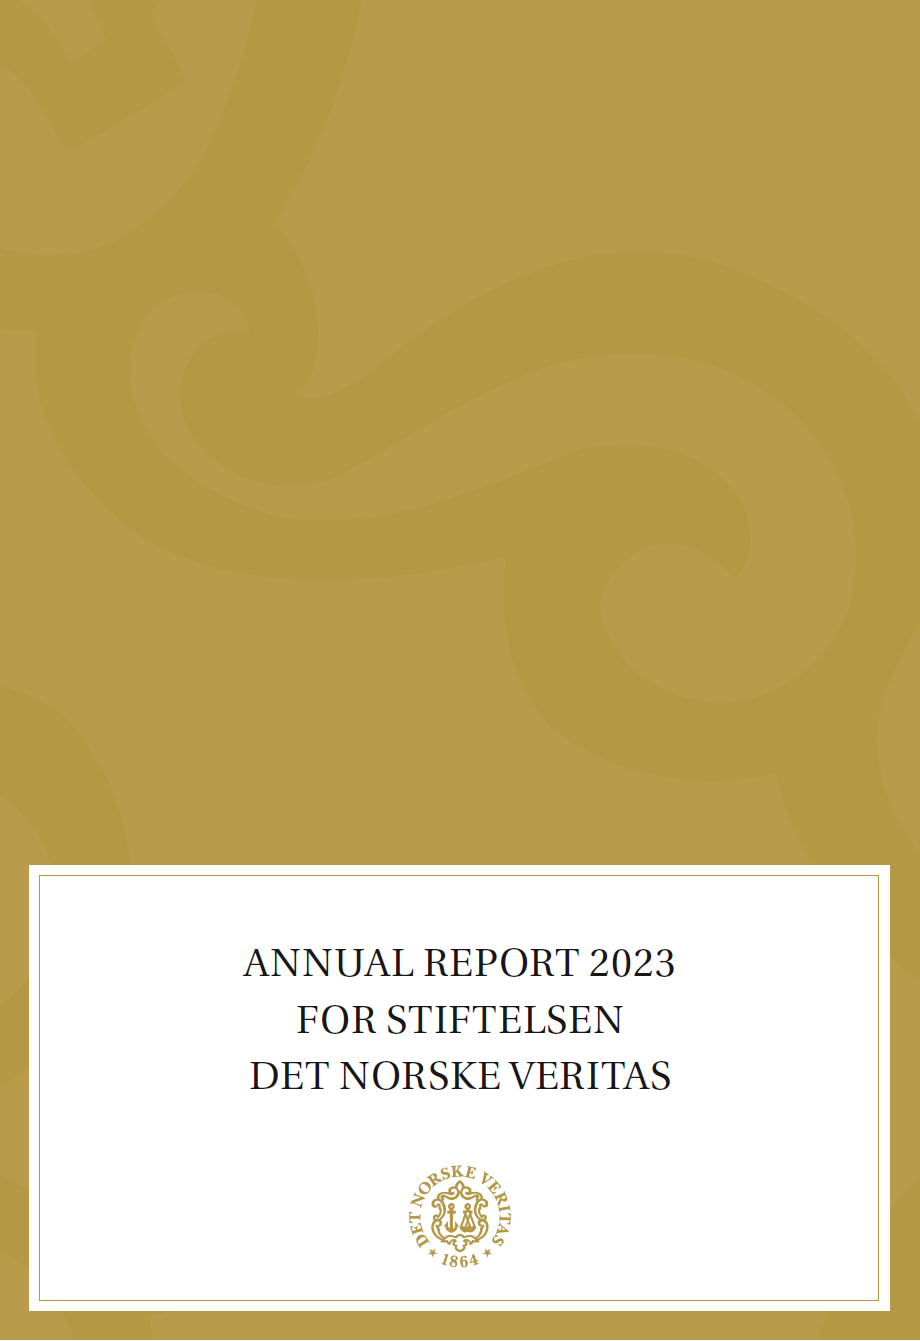 Annual Report 2023 for Stiftelsen Det Norske Veritas